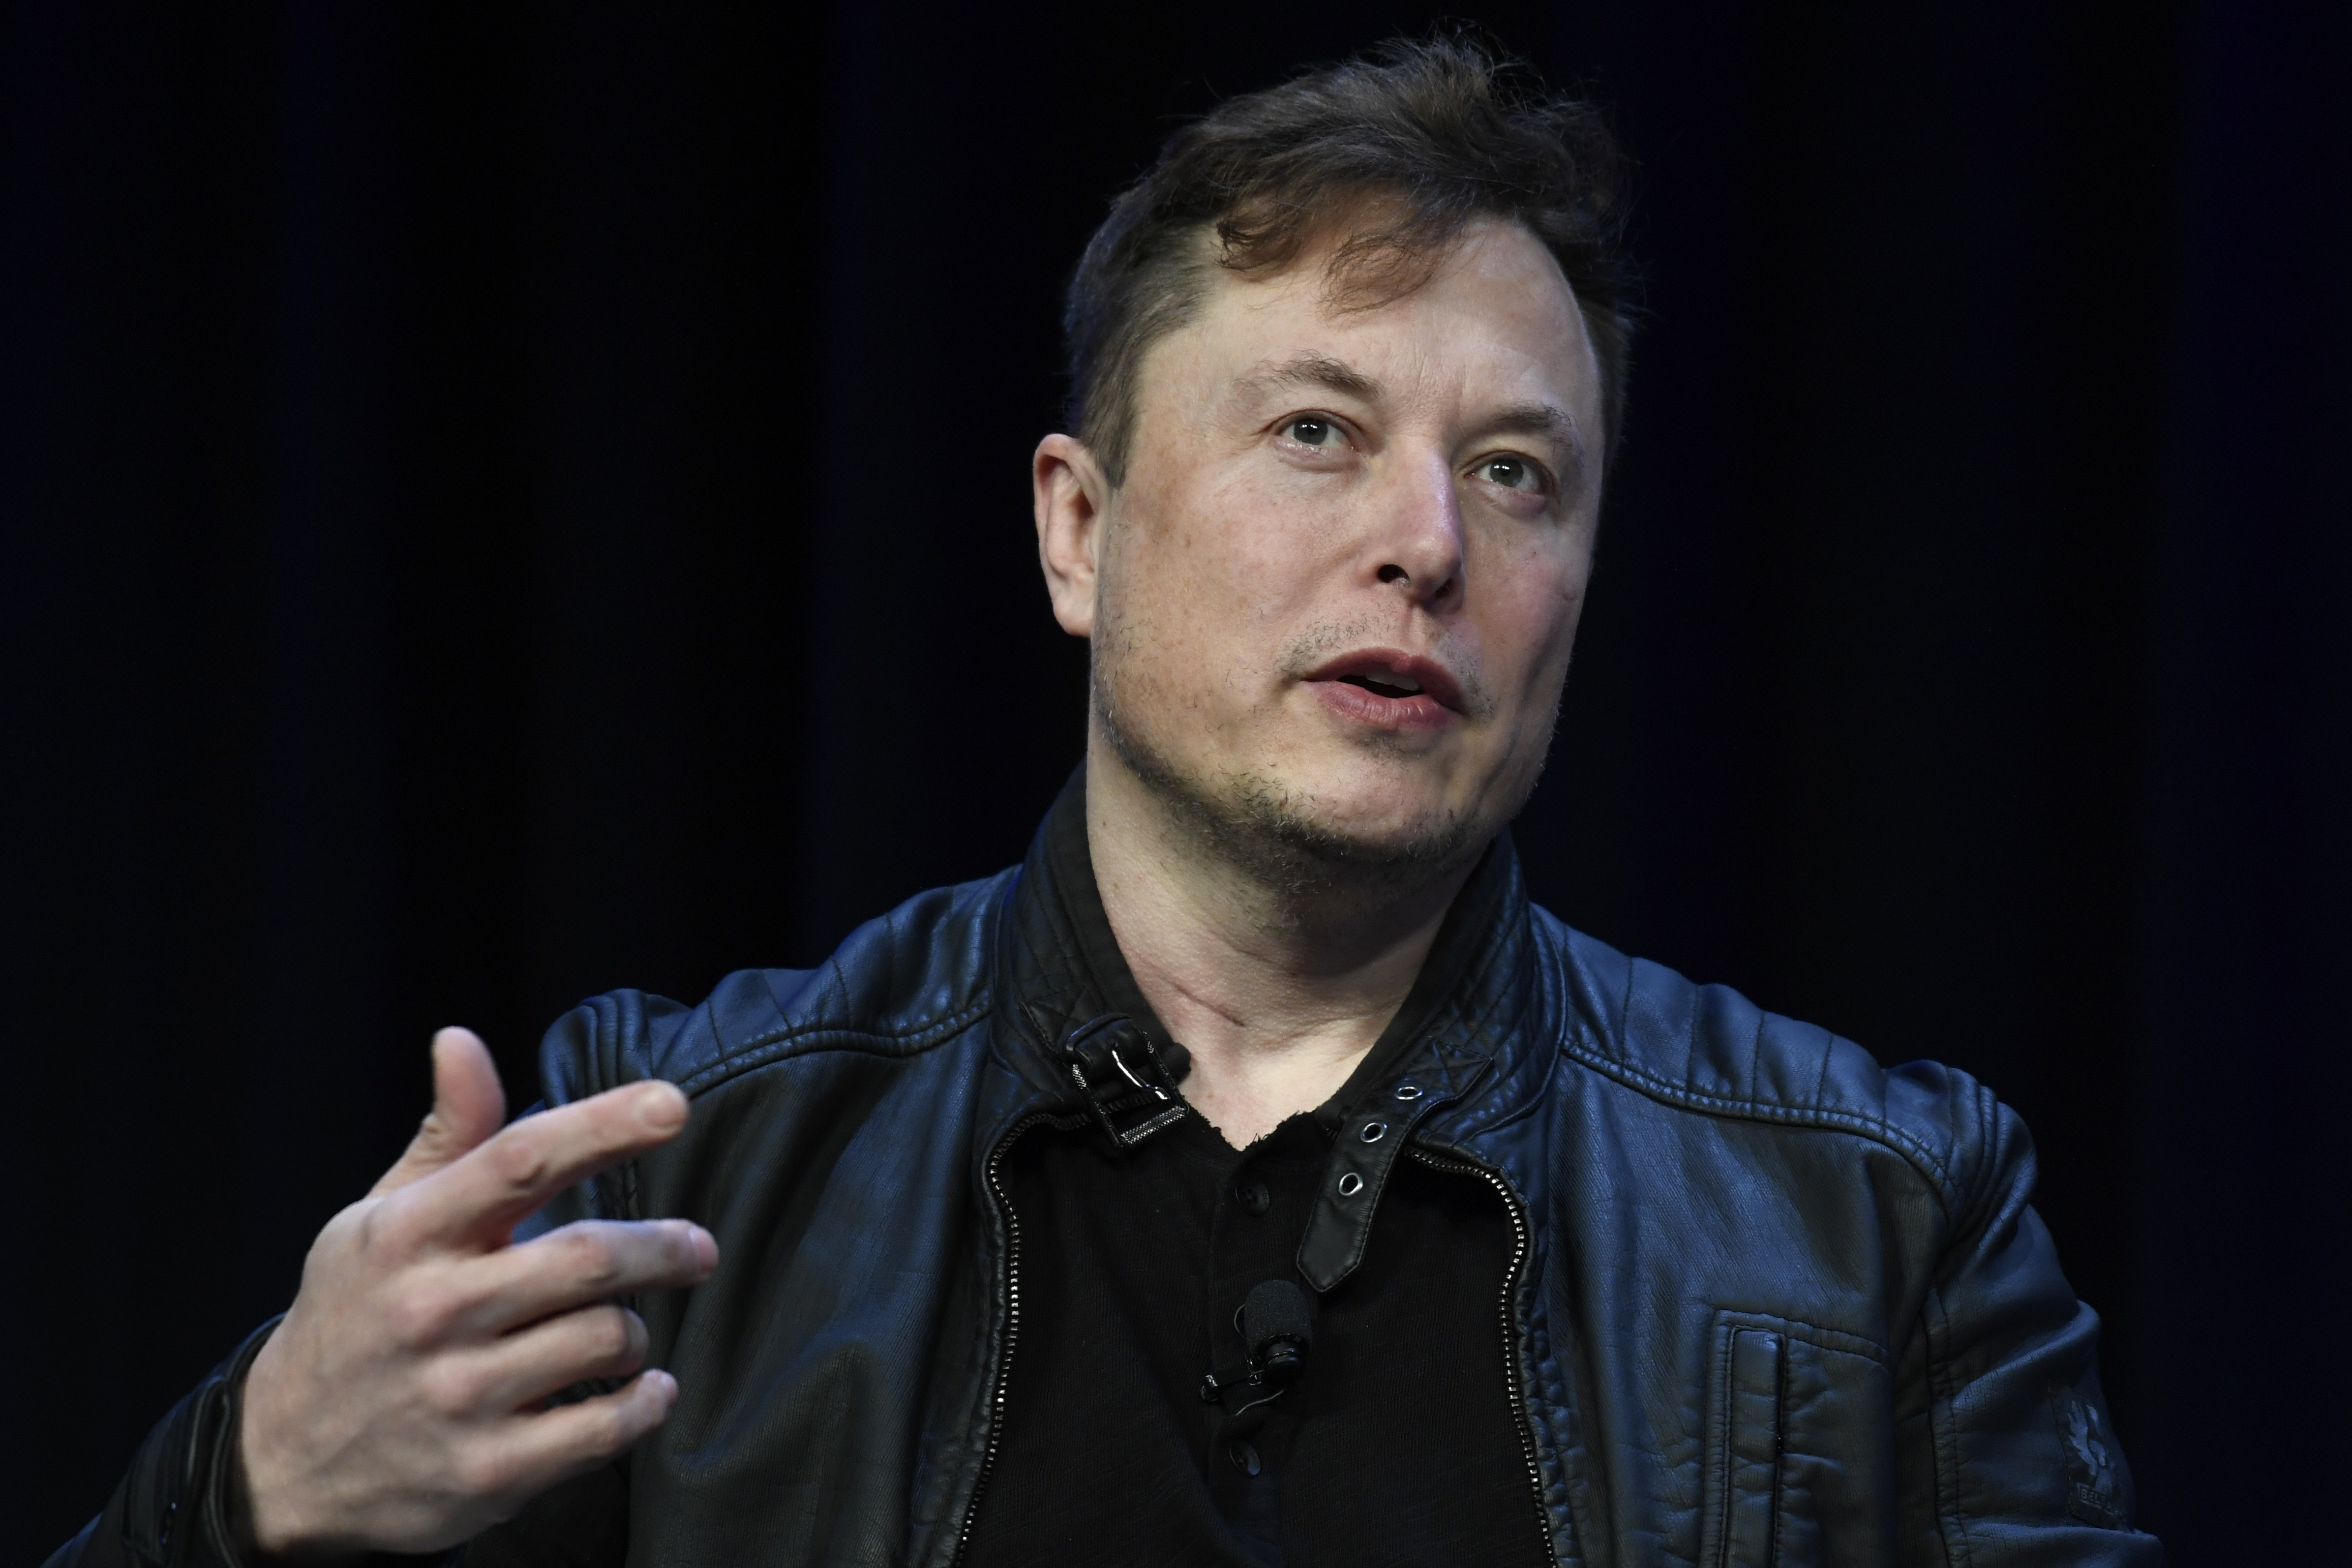 ARCHIVO - El director general de Tesla y SpaceX, Elon Musk, durante una conferencia en Washington, el lunes 9 de marzo de 2020. (AP Foto/Susan Walsh, Archivo)